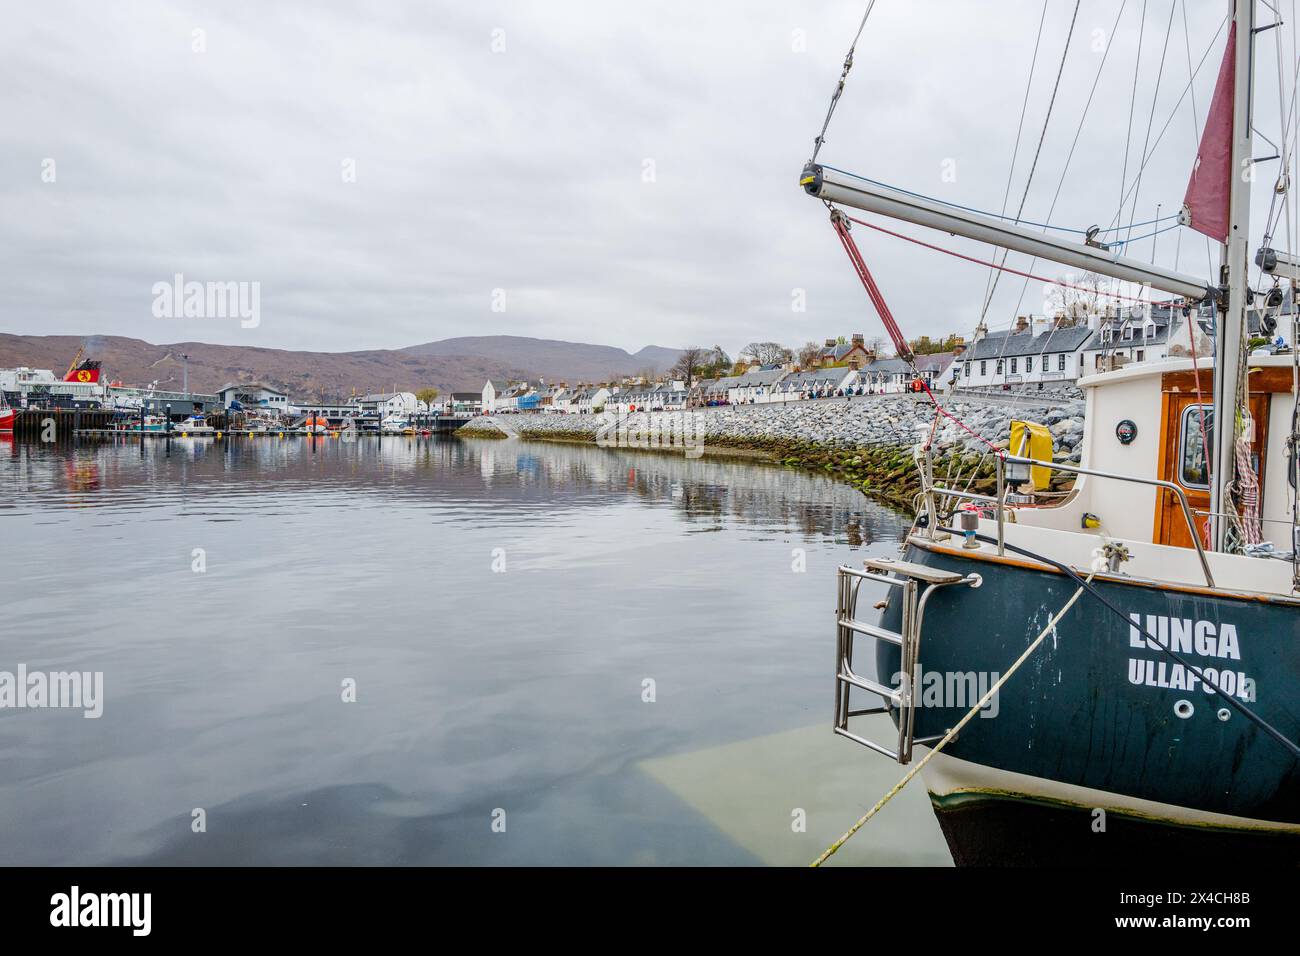 Ullapool ist eine Stadt und ein Hauptfischerhafen an der westlichen Nordküste Schottlands, die einen sicheren Ankerplatz für Schiffe und kleine Kreuzfahrtschiffe bietet. Stockfoto